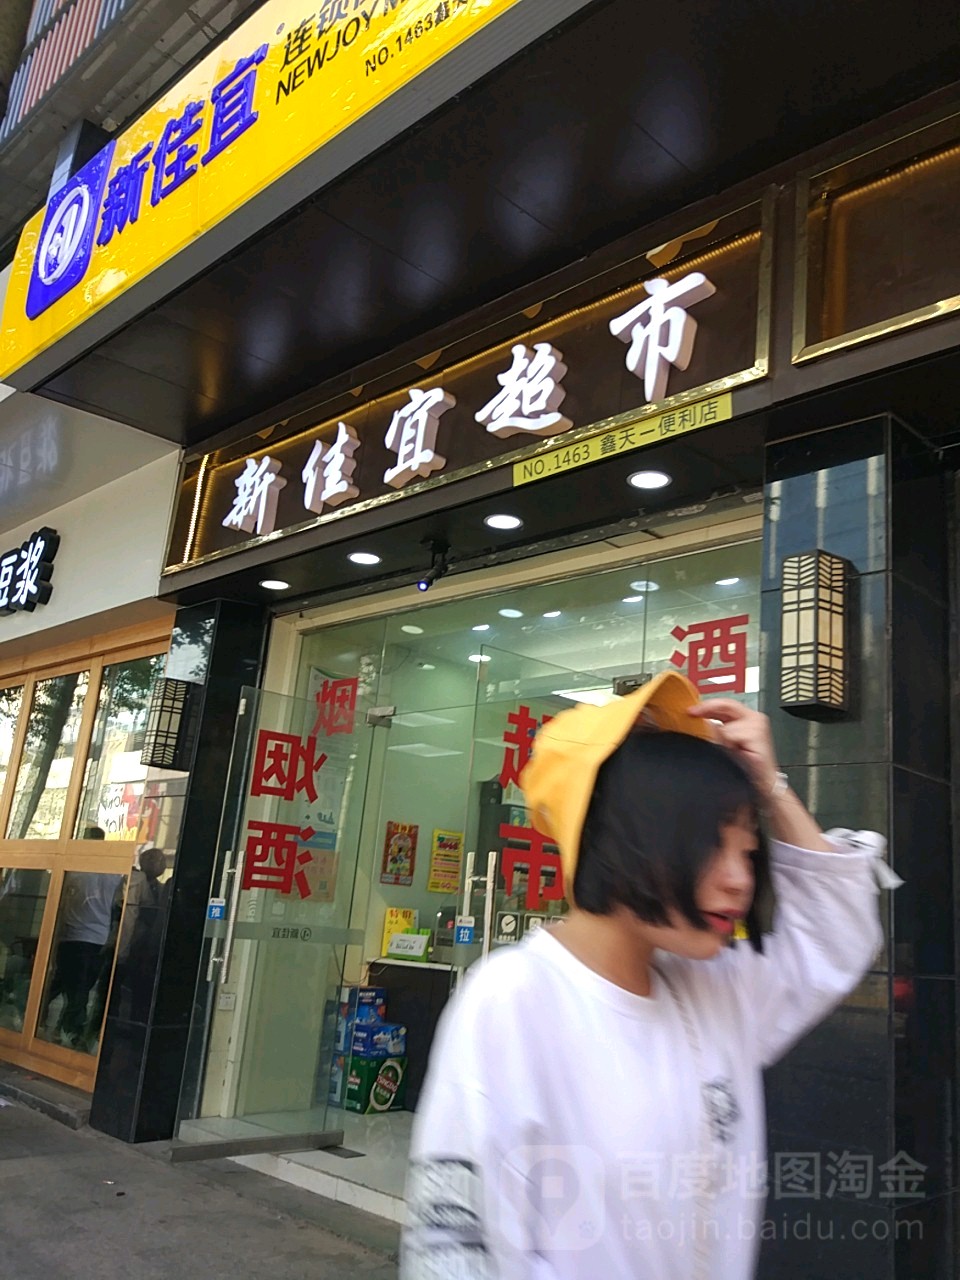 新佳宜超市(1463店)